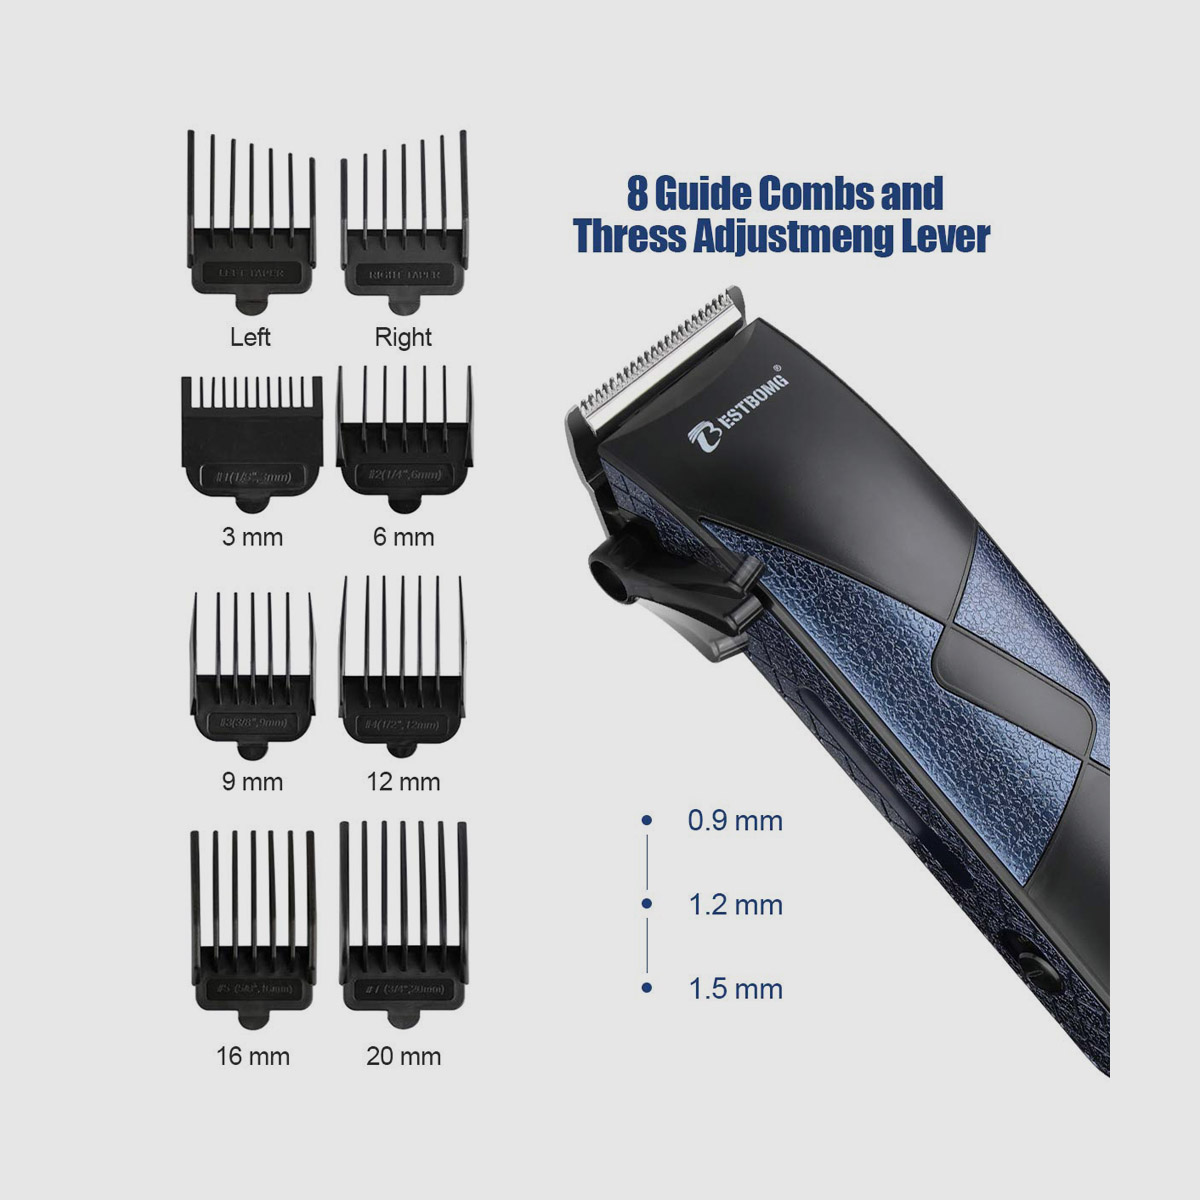 Professional Hair Trimmer Grooming Kit for Men - 3